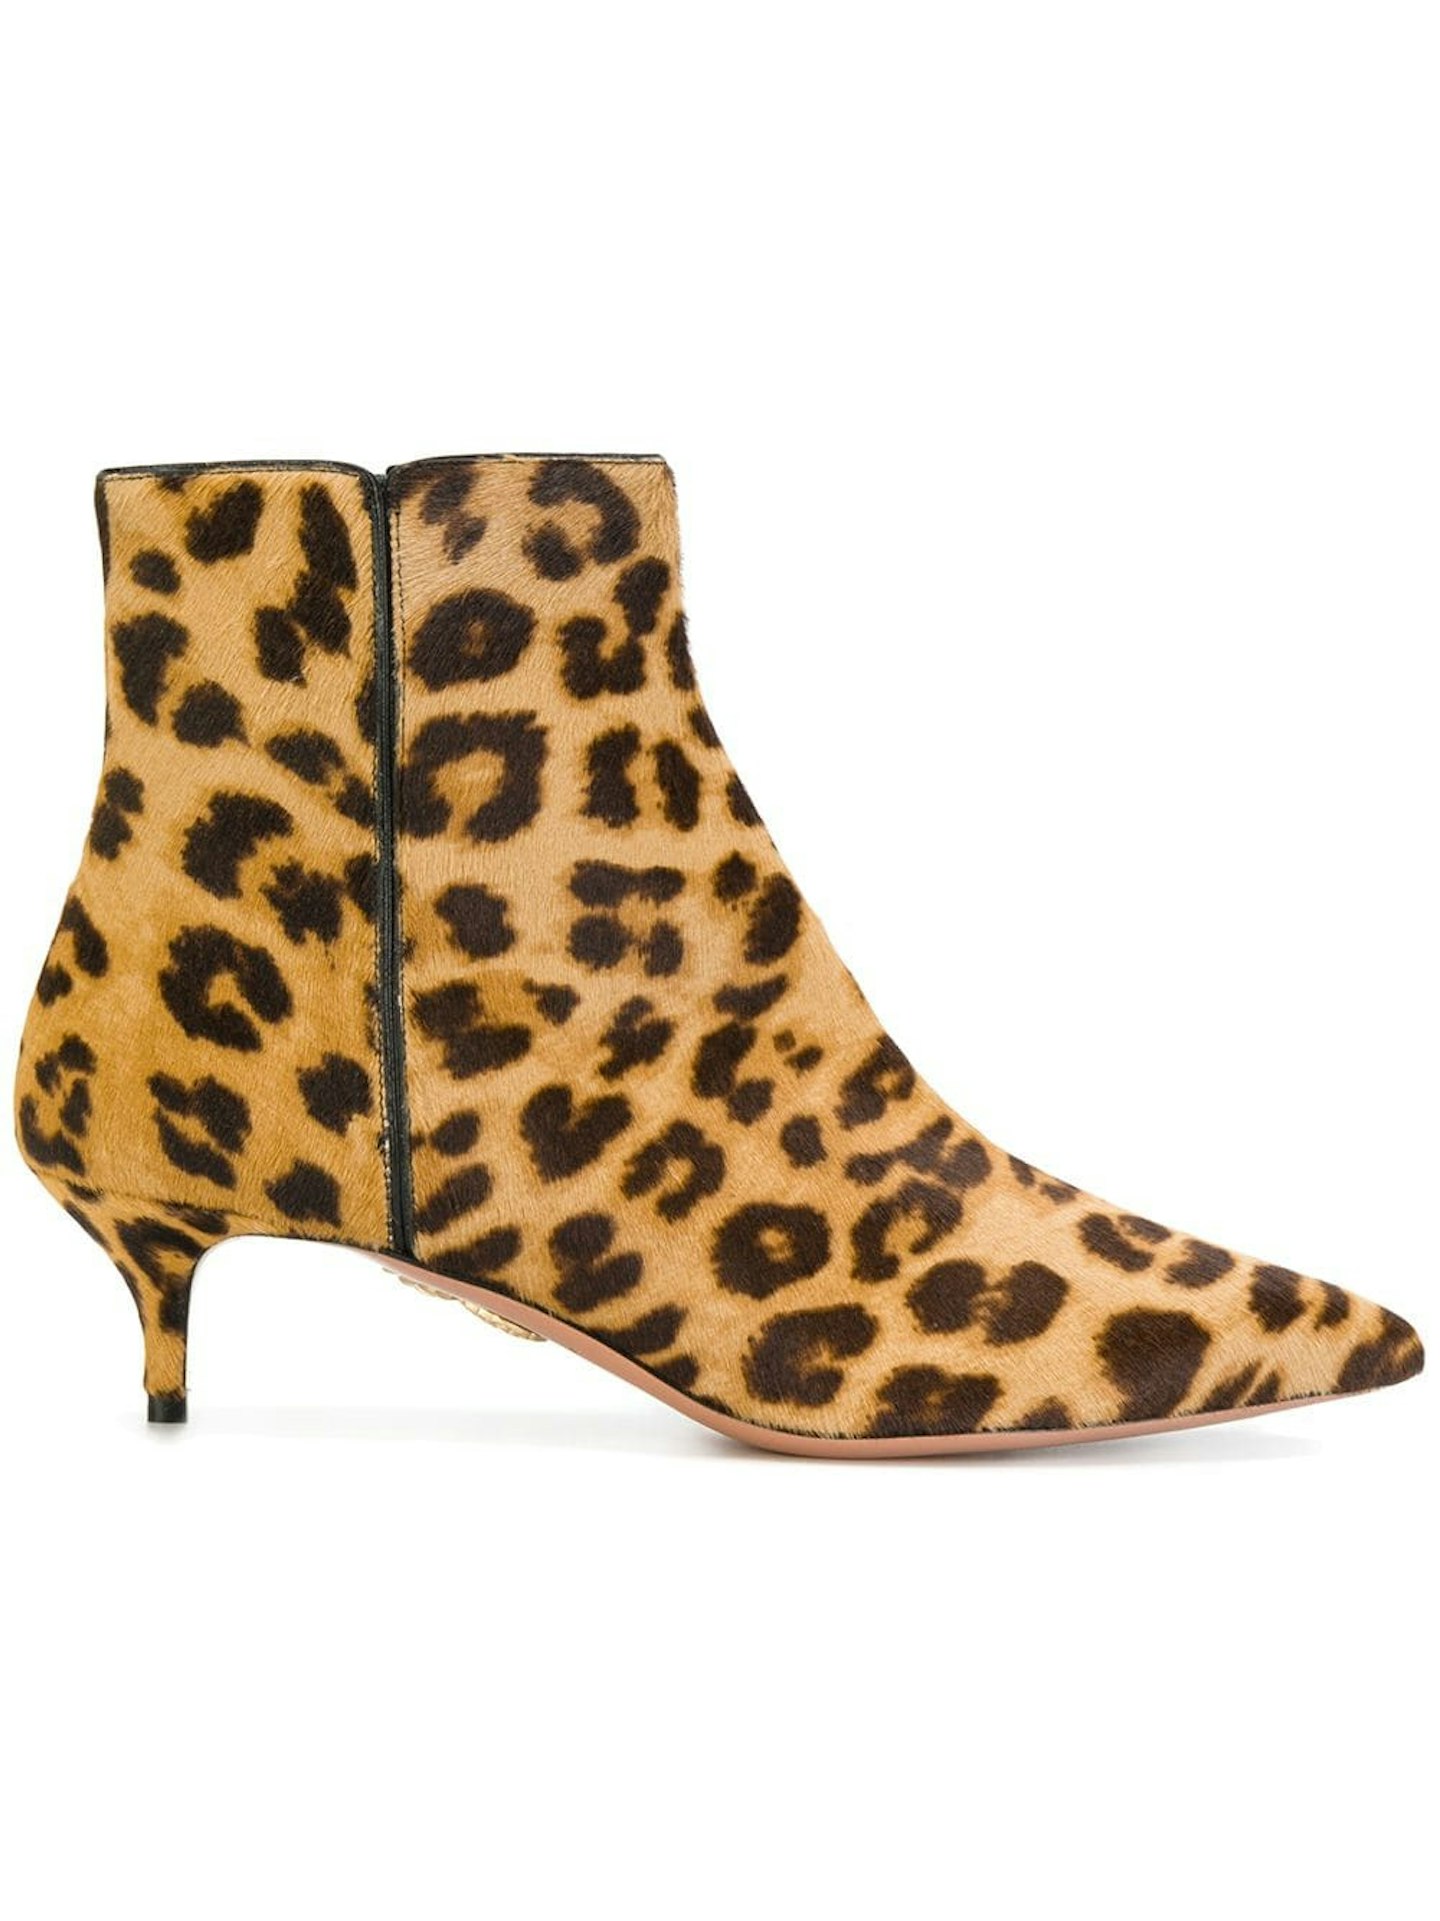 Aquazzura, Leopard Print Boots, £423